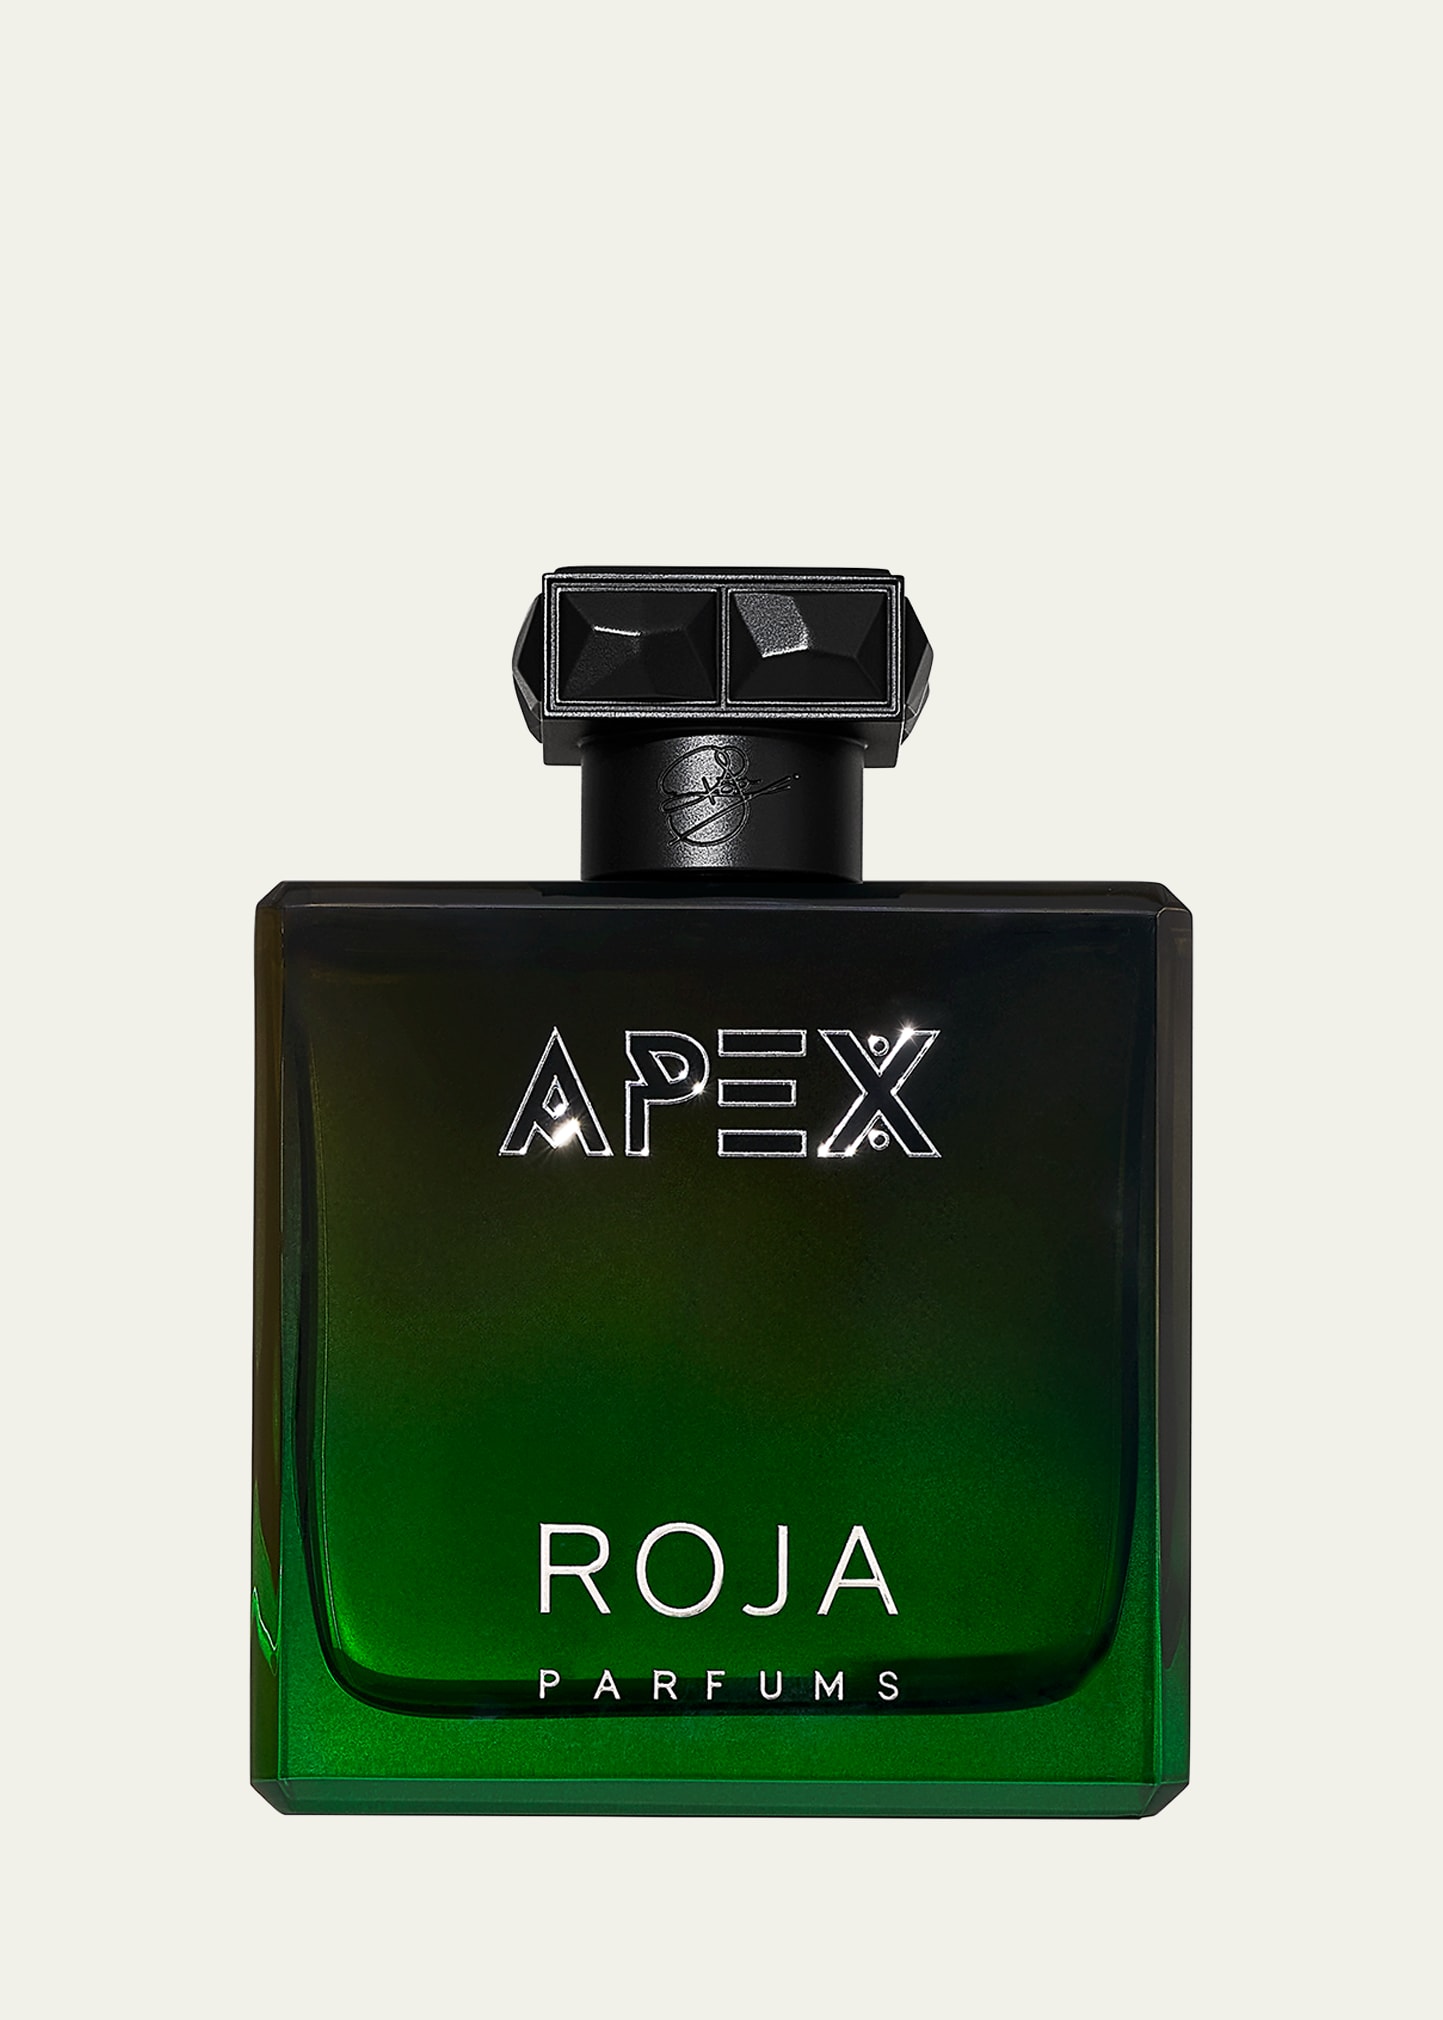 APEX Parfum Cologne, 3.4 oz.